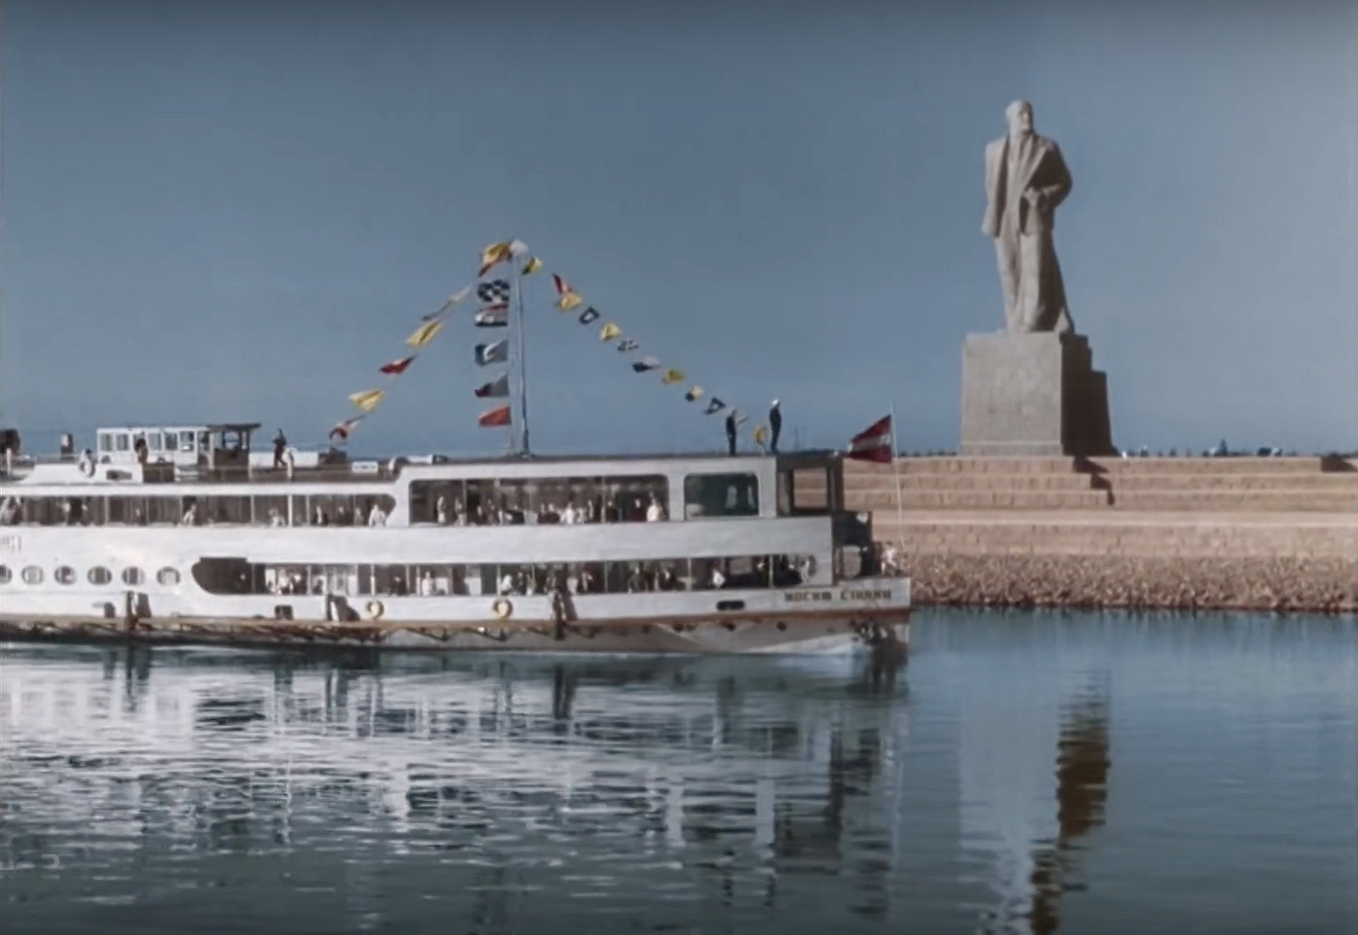 Мимо проплывают пароходы. Теплоход Иосиф Сталин Волга-Волга.